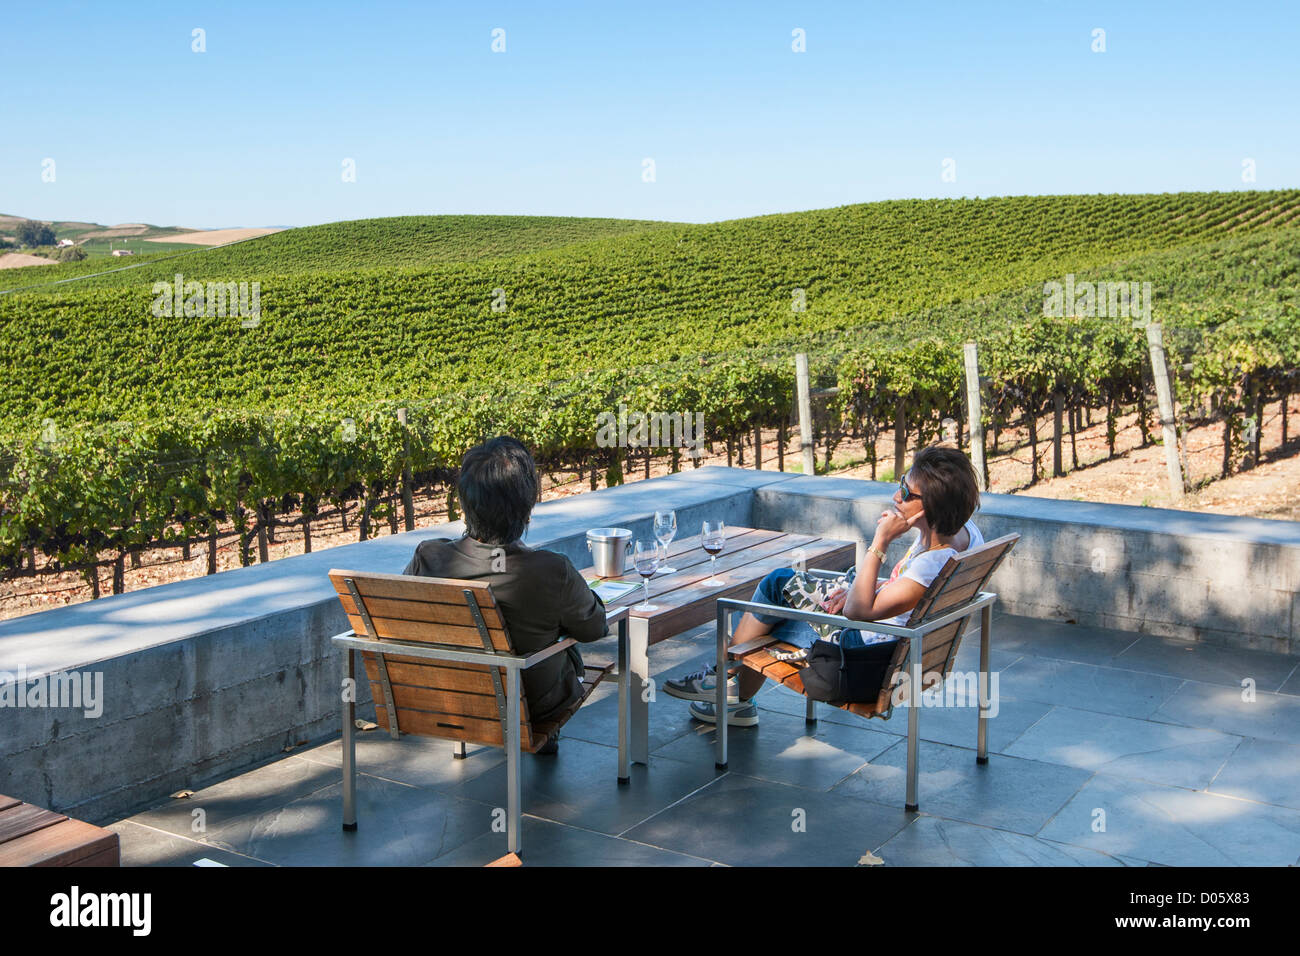 Schöne Aussicht auf Cuvaison Winery und Weingut in Napa Valley. Stockfoto